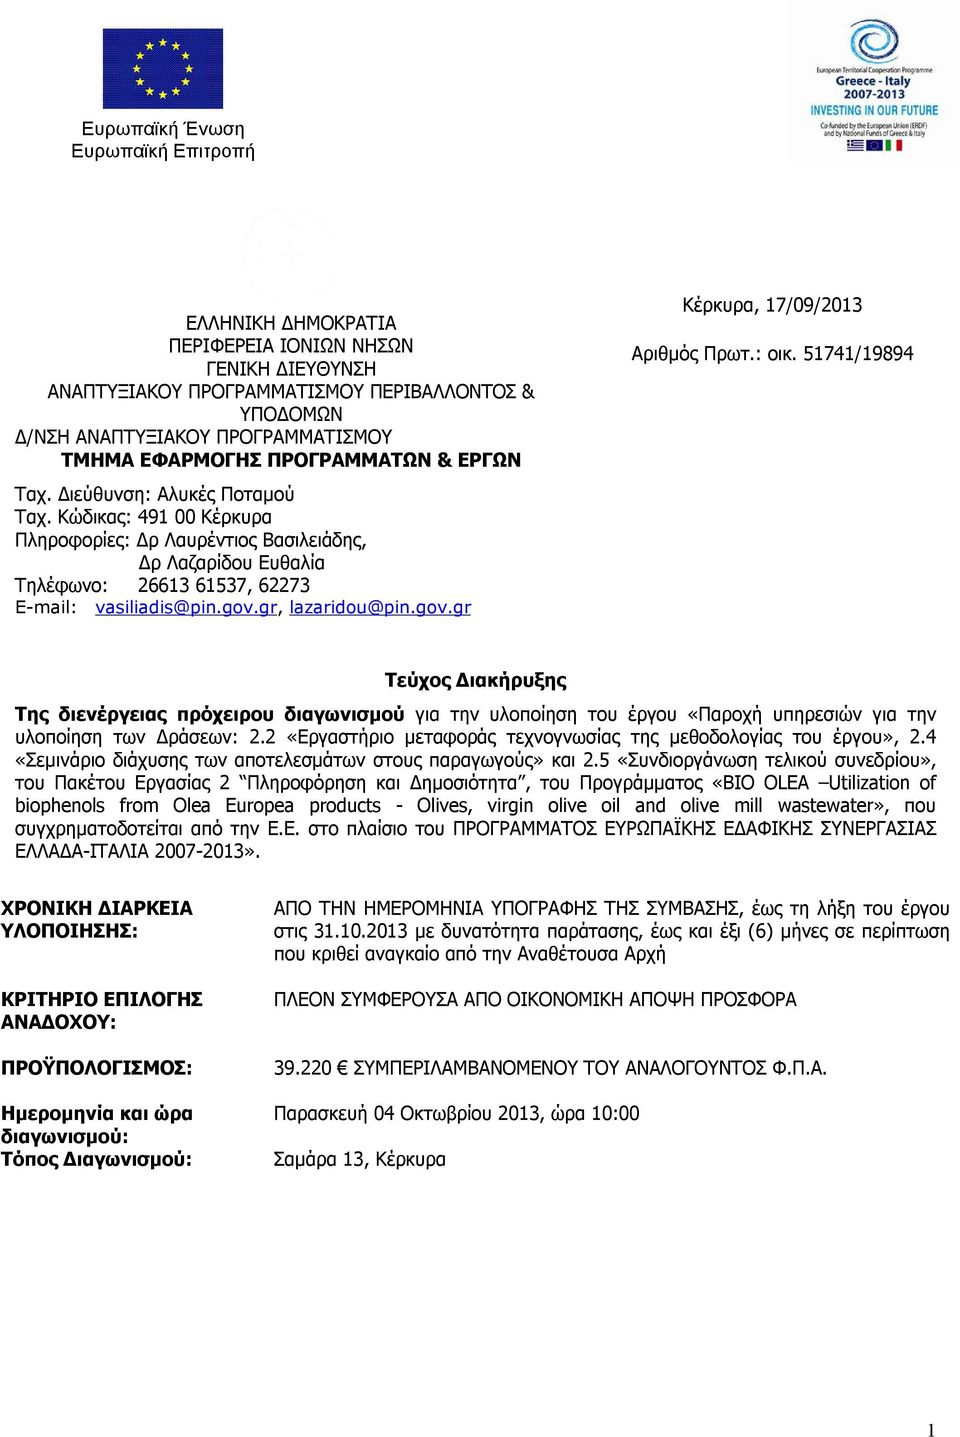 Κώδικας: 491 00 Κέρκυρα Πληροφορίες: Δρ Λαυρέντιος Βασιλειάδης, Δρ Λαζαρίδου Ευθαλία Τηλέφωνο: 26613 61537, 62273 Ε-mail: vasiliadis@pin.gov.gr, lazaridou@pin.gov.gr Κέρκυρα, 17/09/2013 Αριθμός Πρωτ.